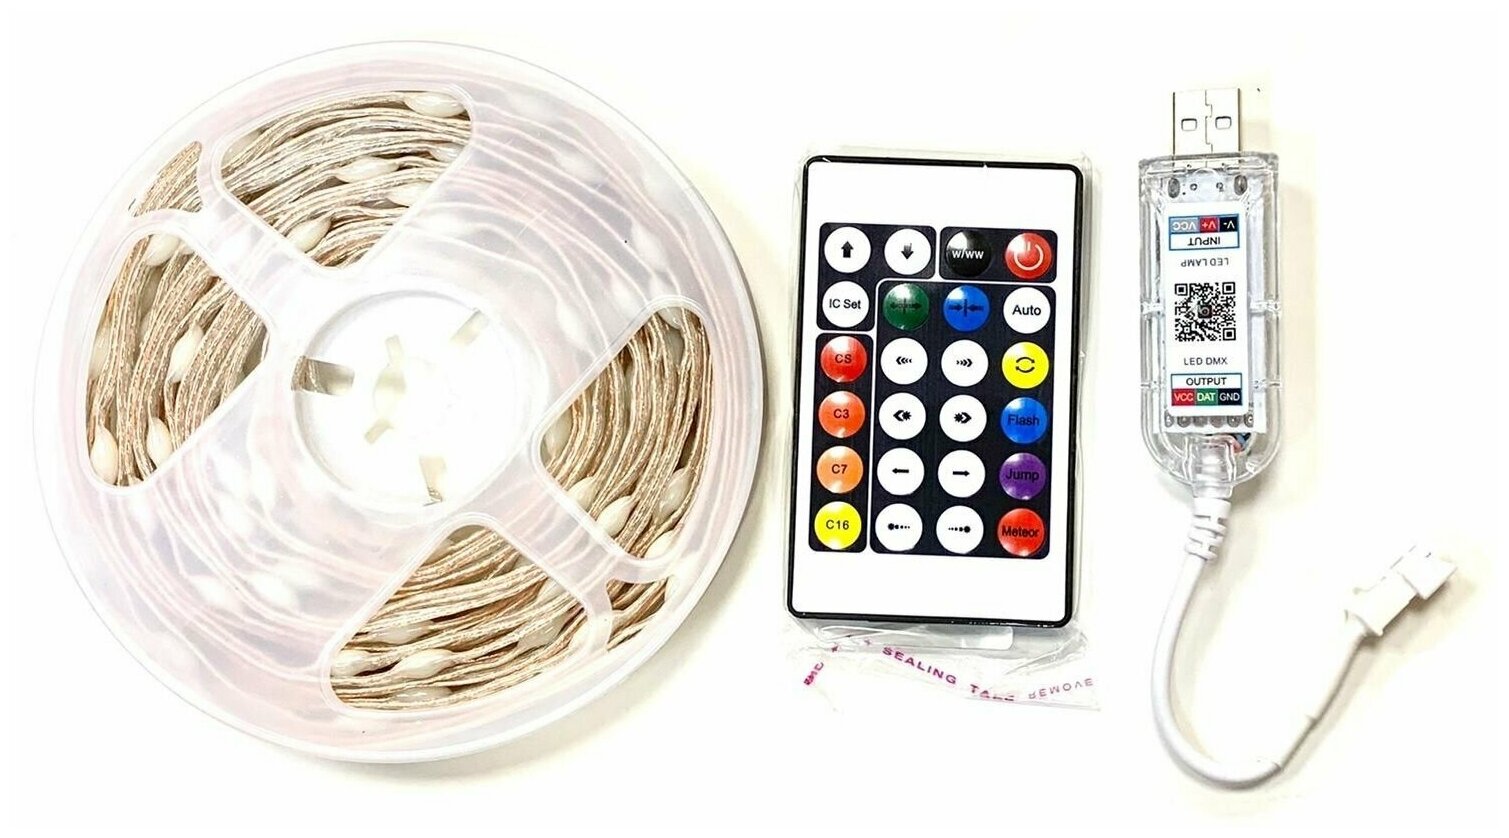 Гирлянда светодиодная с пультом управления, USB / Электронная гирлянда LED праздничная, управление с телефона, 10 м